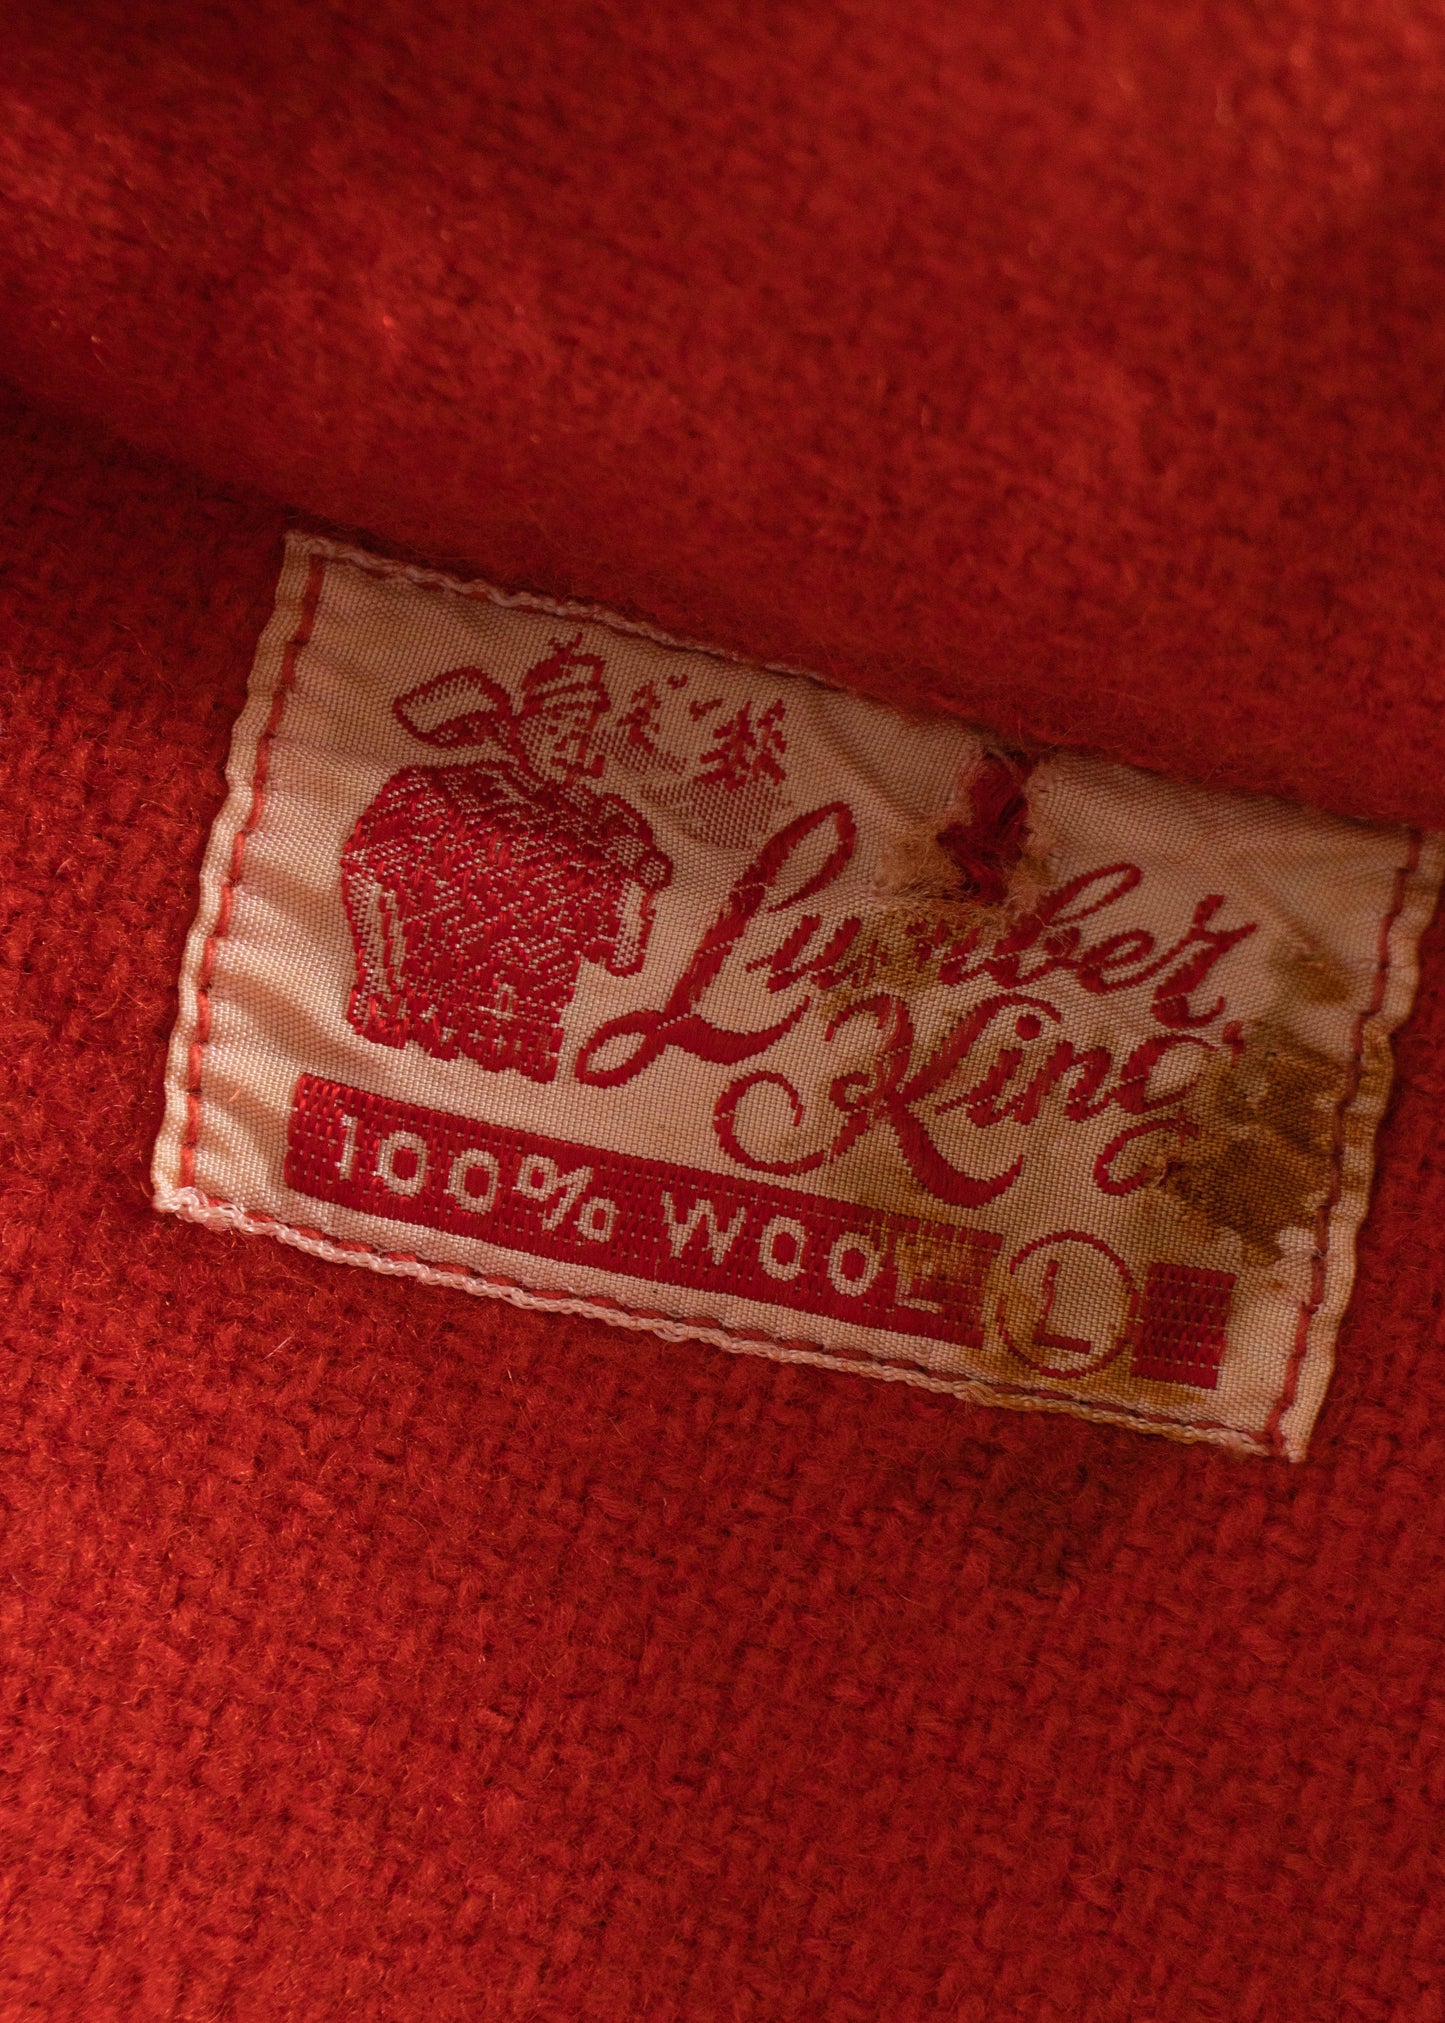 1970s Lunber King Wool Flannel Jacket Size L/XL